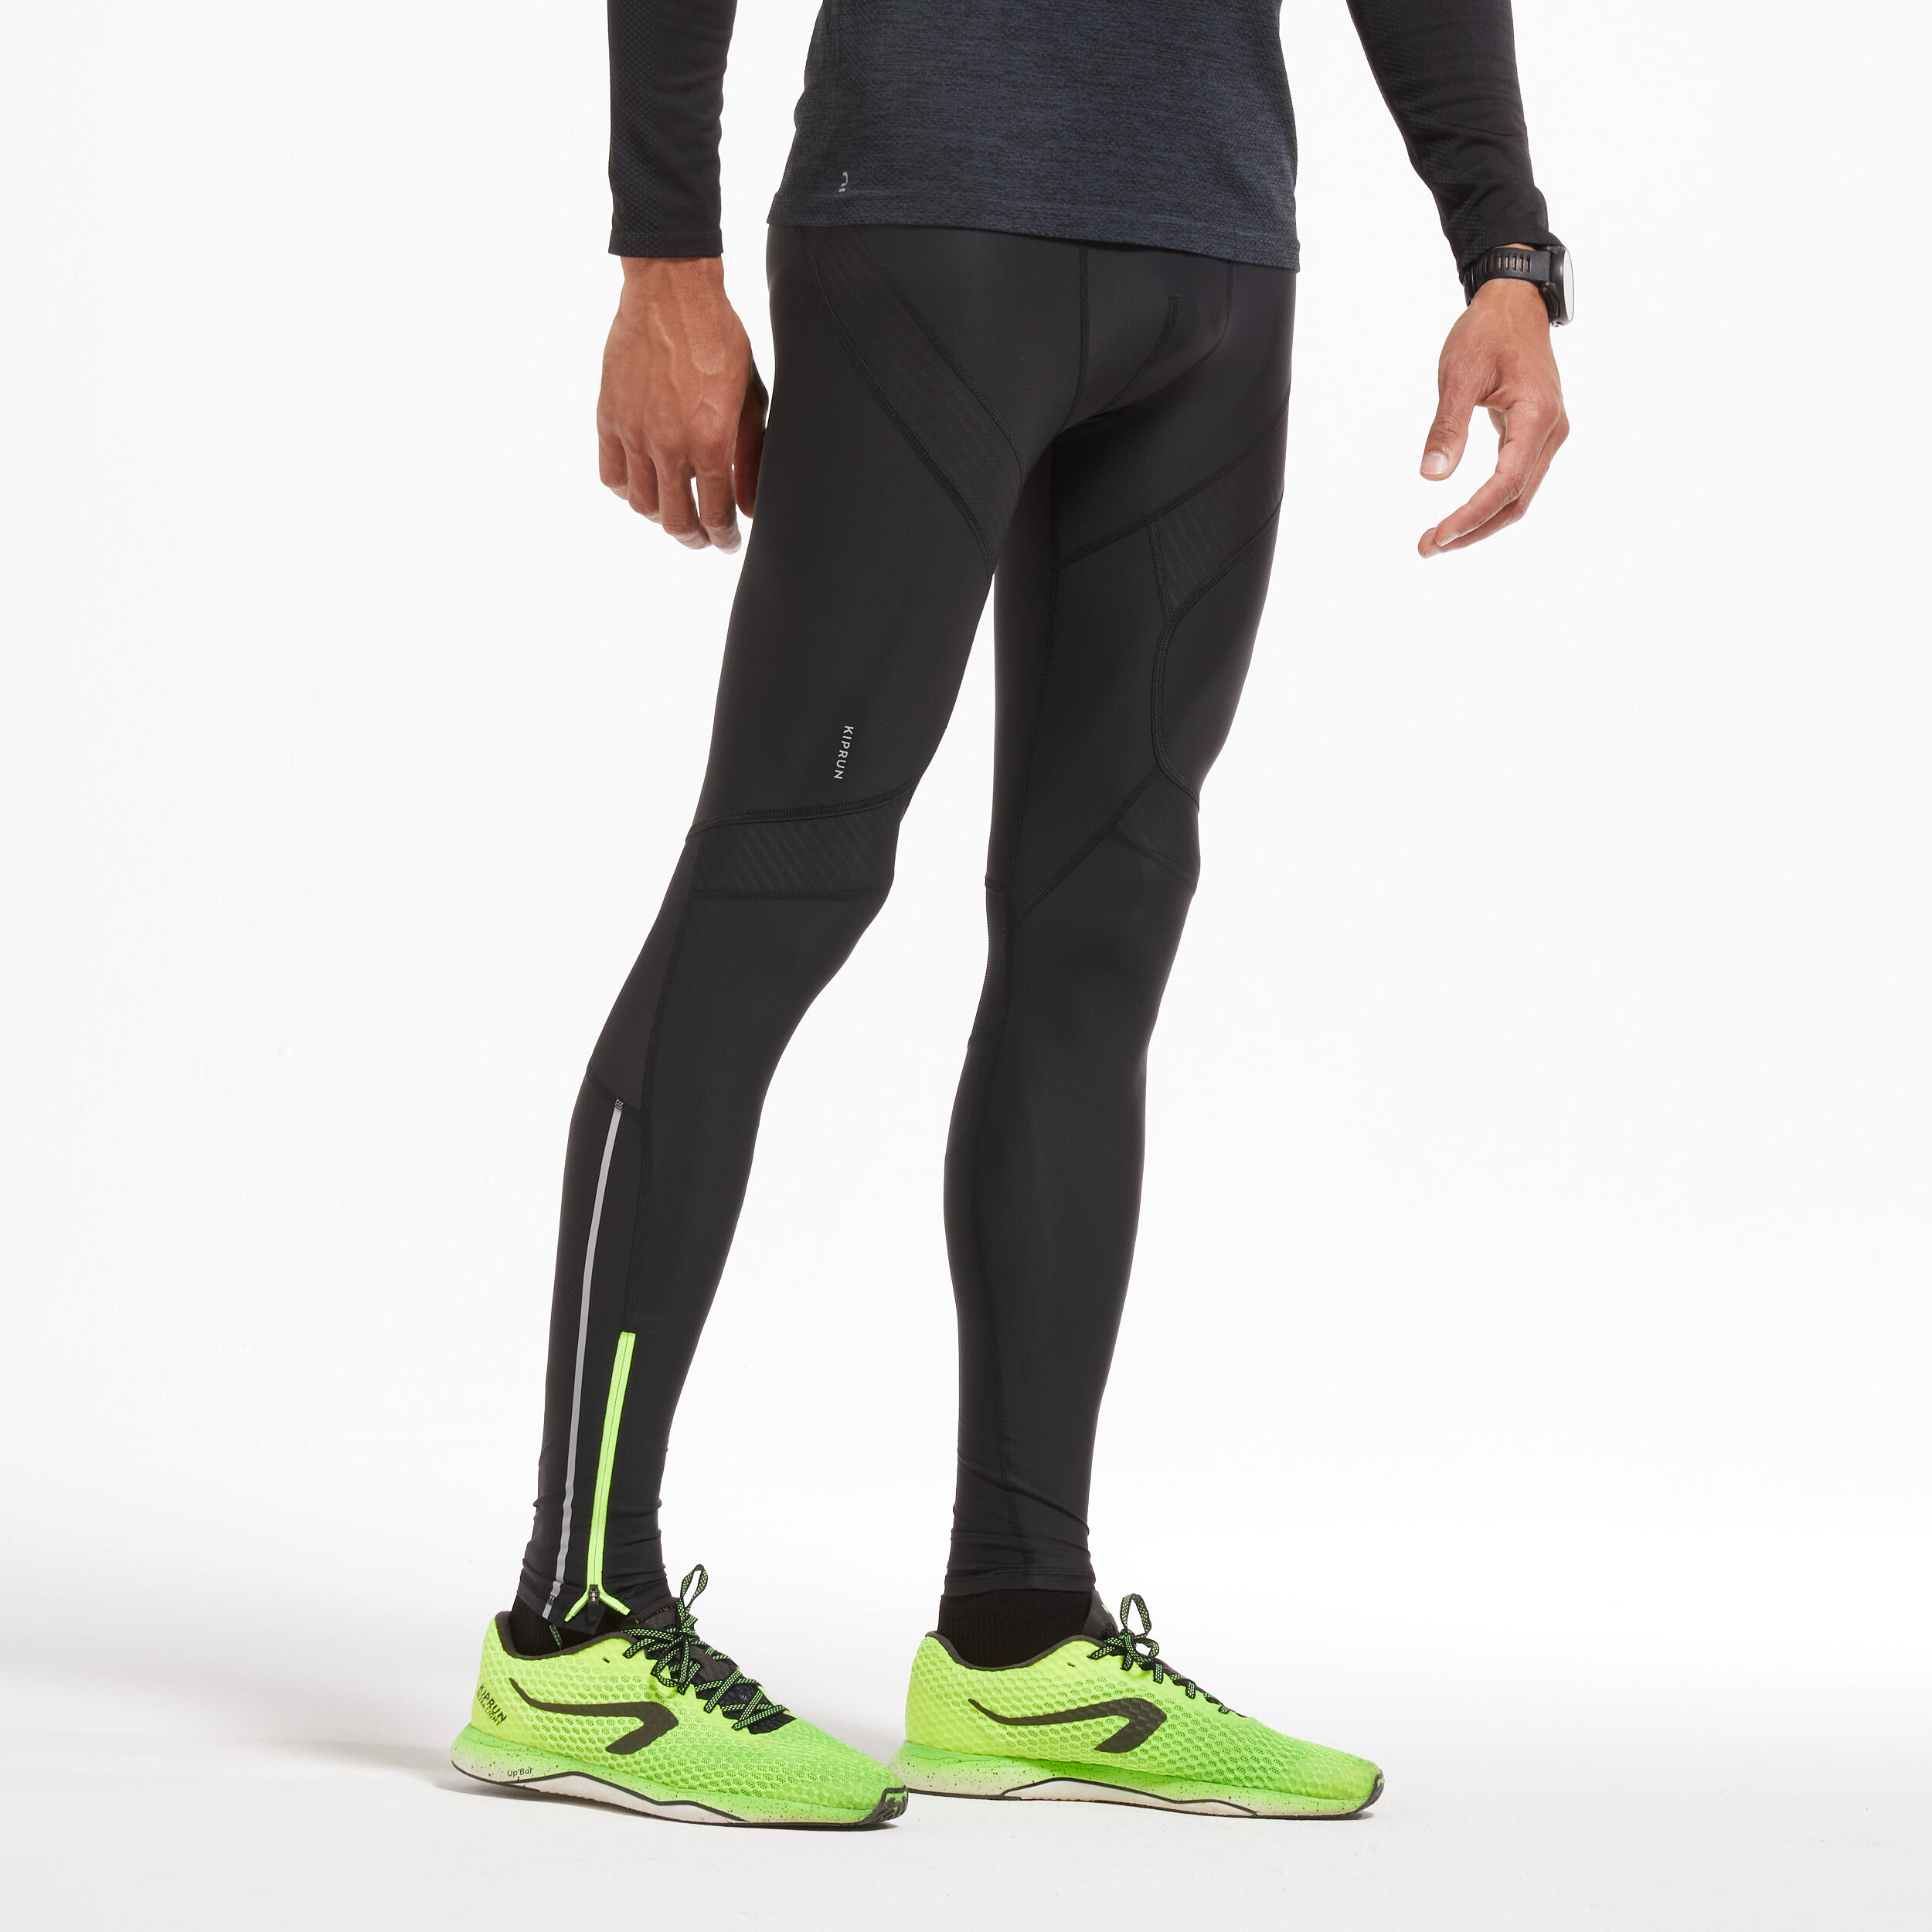 Discover more than 199 decathlon men’s running leggings super hot